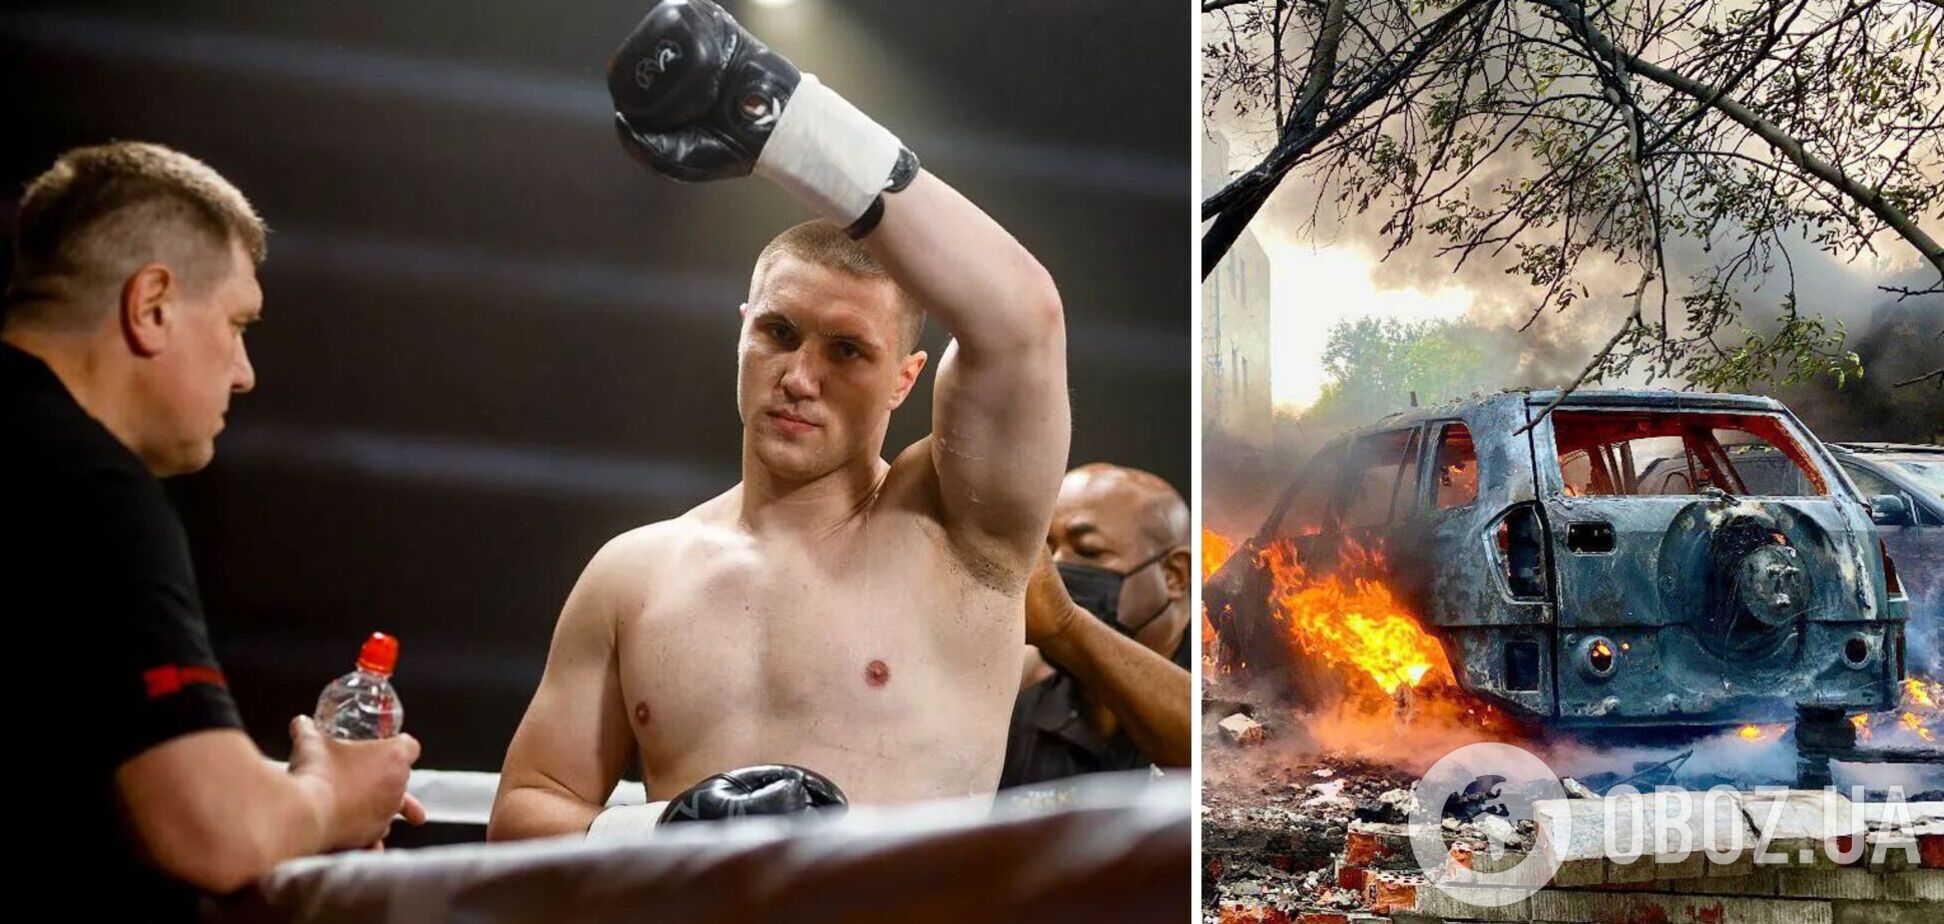 '8 загиблих живцем згоріли в авто': відомий український супертяж показав, як у Києві Росія 'насолоджувалася вбивствами'